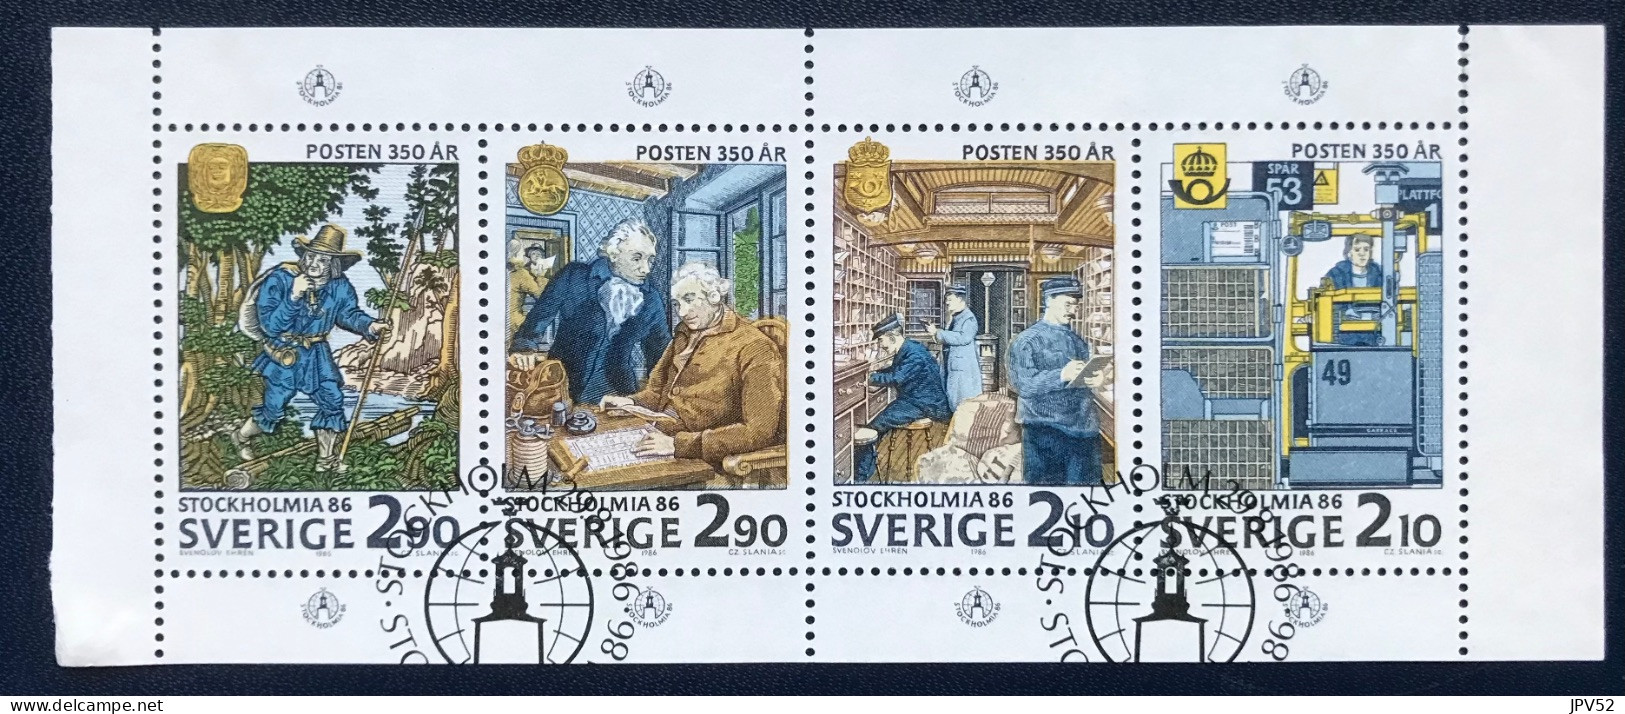 Sverige - Sweden - Zweden - VEL1/36 - 1986 - (°)used - Michel 143 - Stockholmia '86 - Blocks & Sheetlets